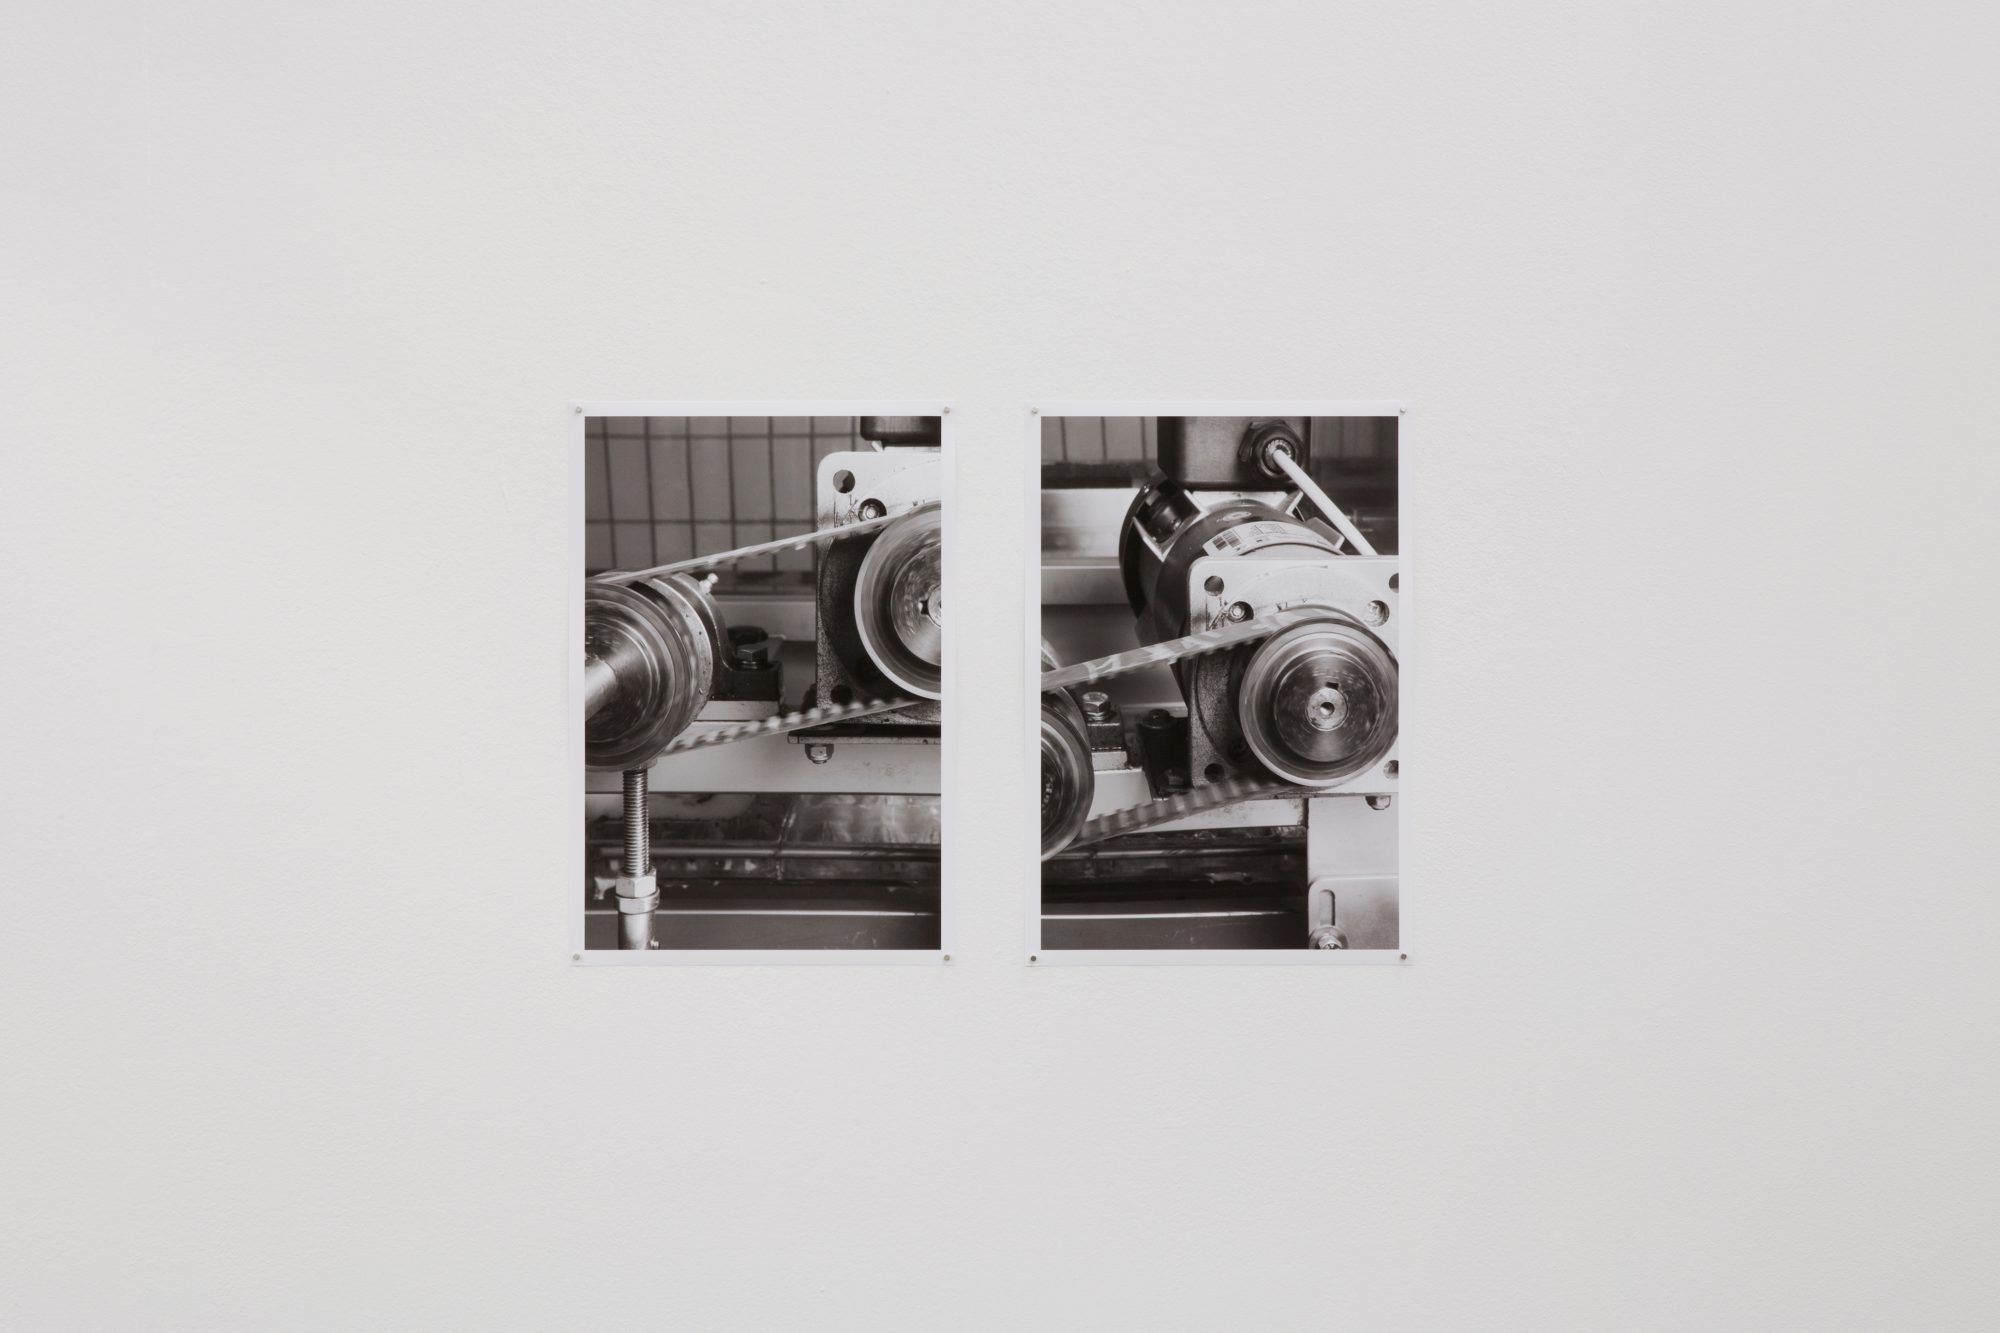 Fétichismarchandise, Centre de la photographie Genève, 2015<br />
archival pigment prints on matte paper, 36 x 24 cm<br />
